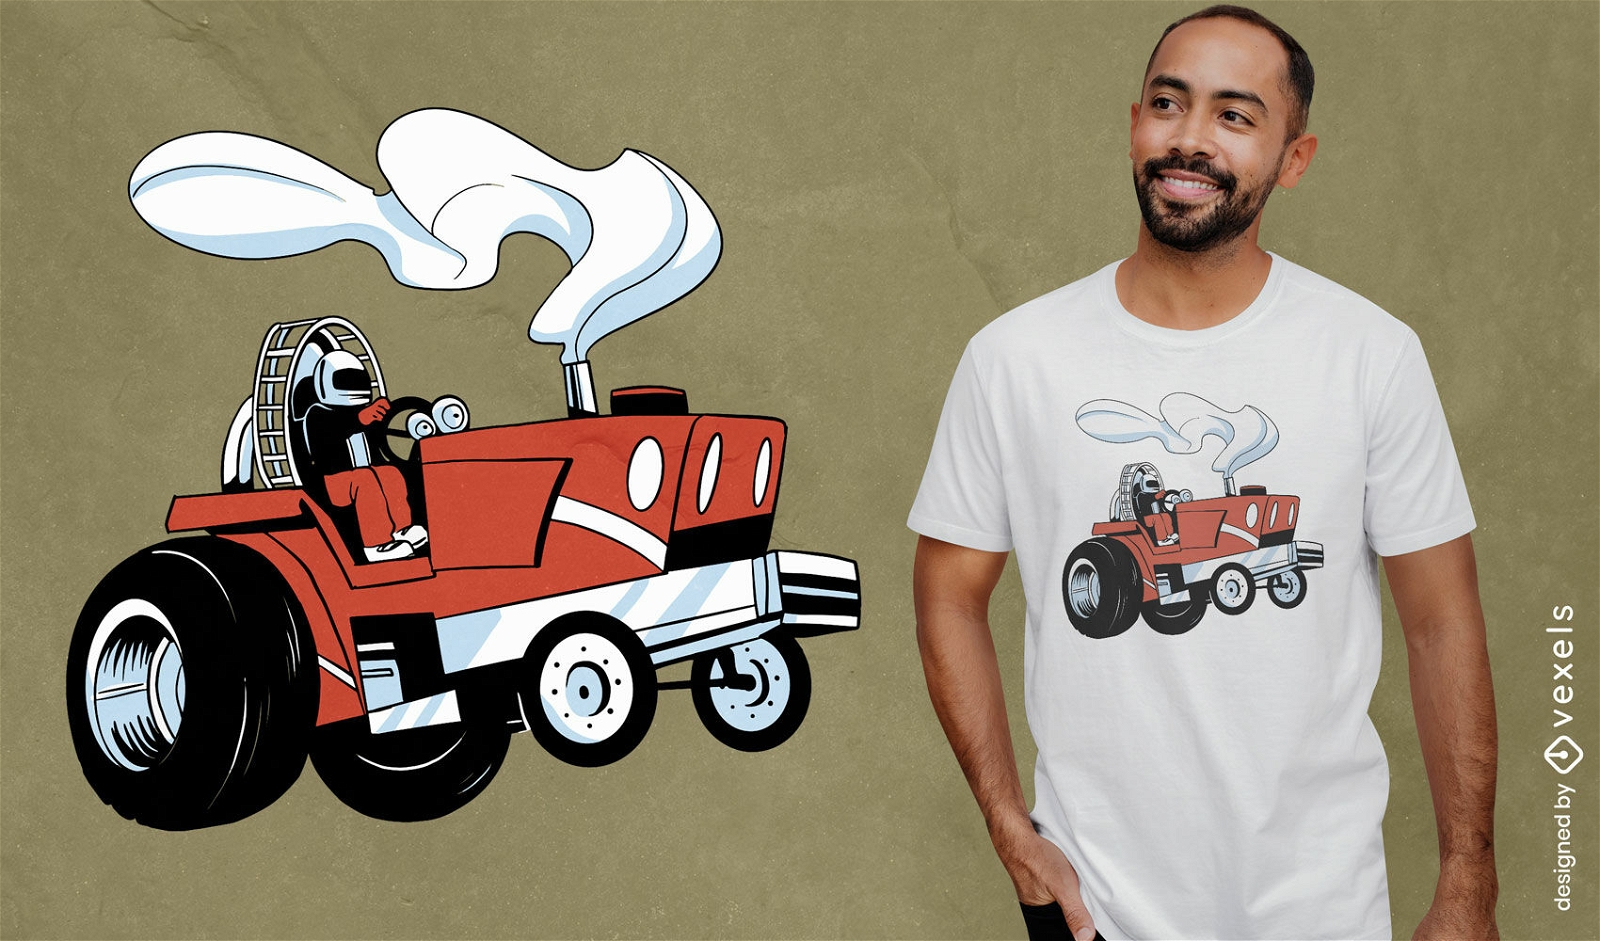 T-Shirt-Design für den Tractor-Pull-Wettbewerb